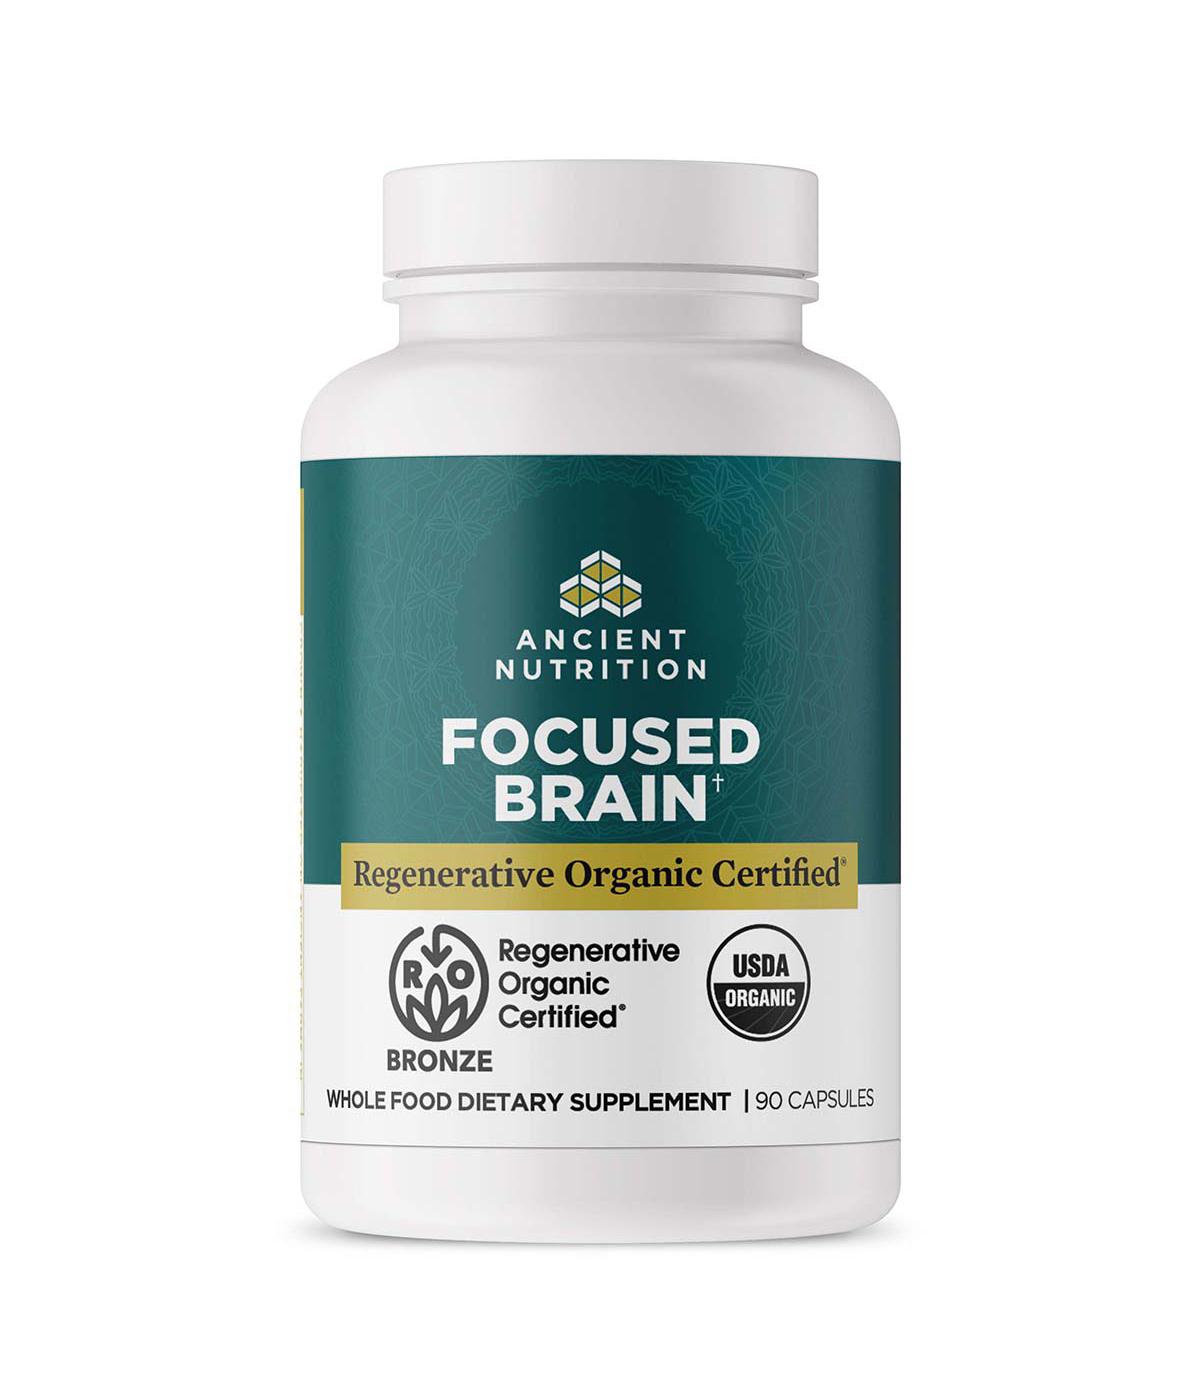 Ancient Nutrition Focused Brain Capsules; image 4 of 5